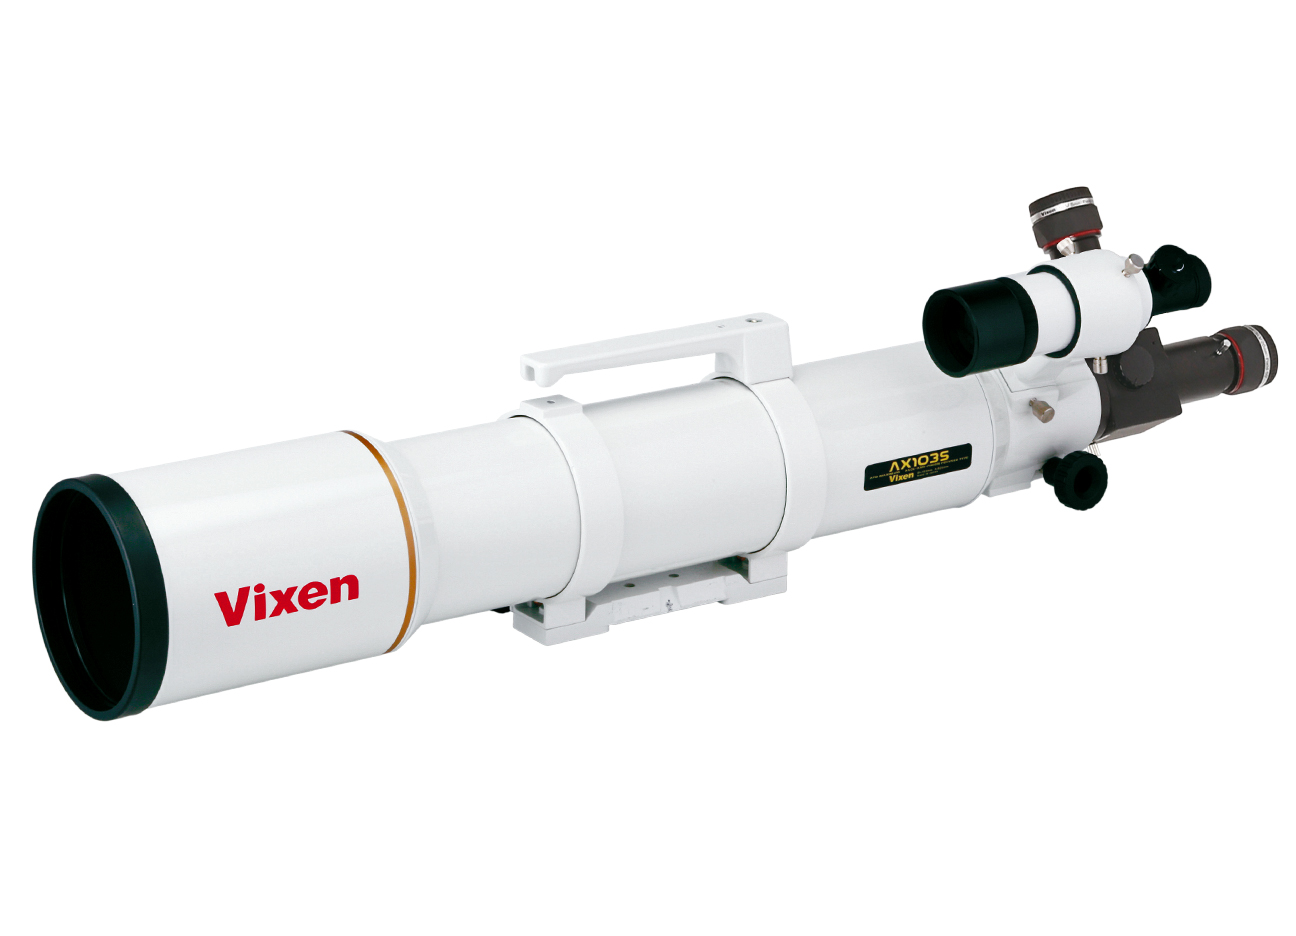 Réfracteur apochromatique Vixen AX103S - tube optique